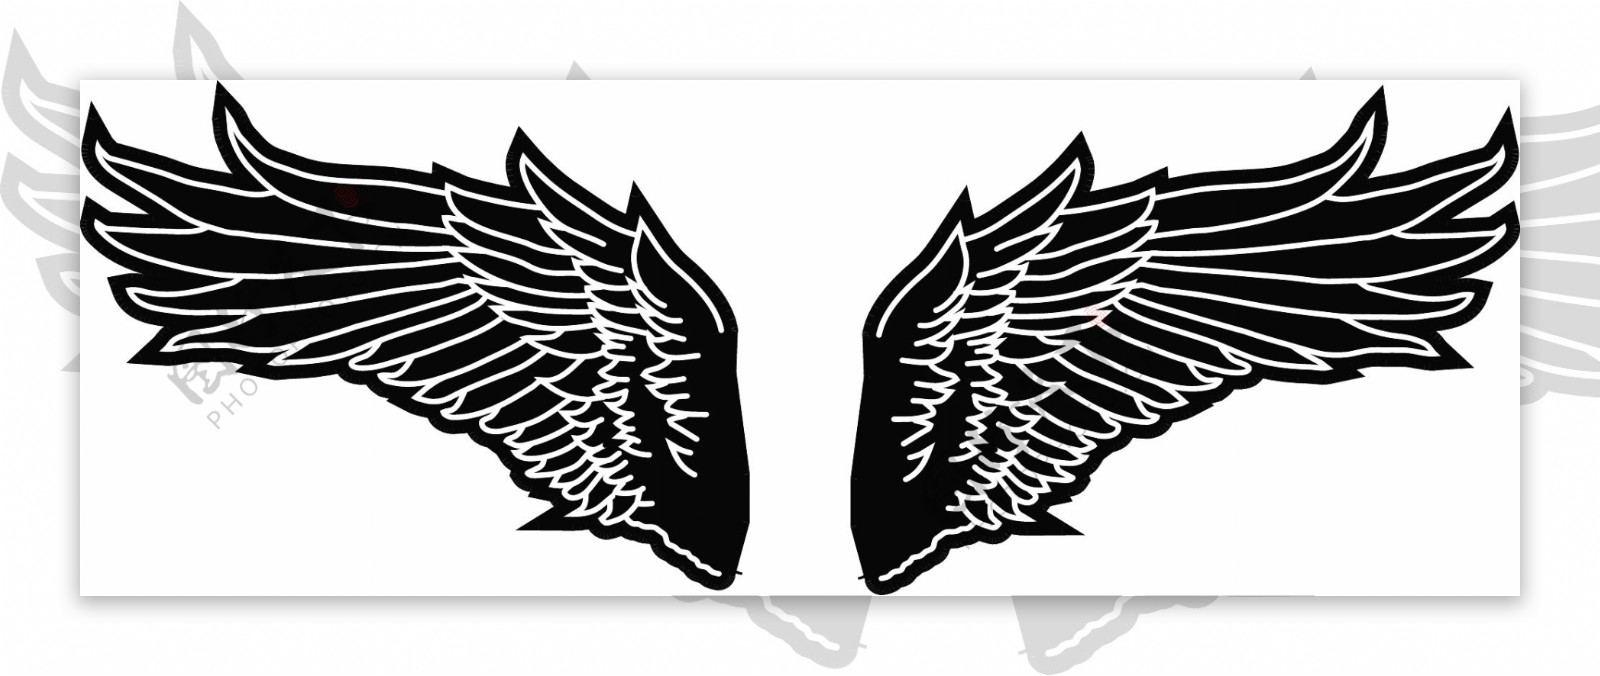 黑白翅膀矢量素材图片